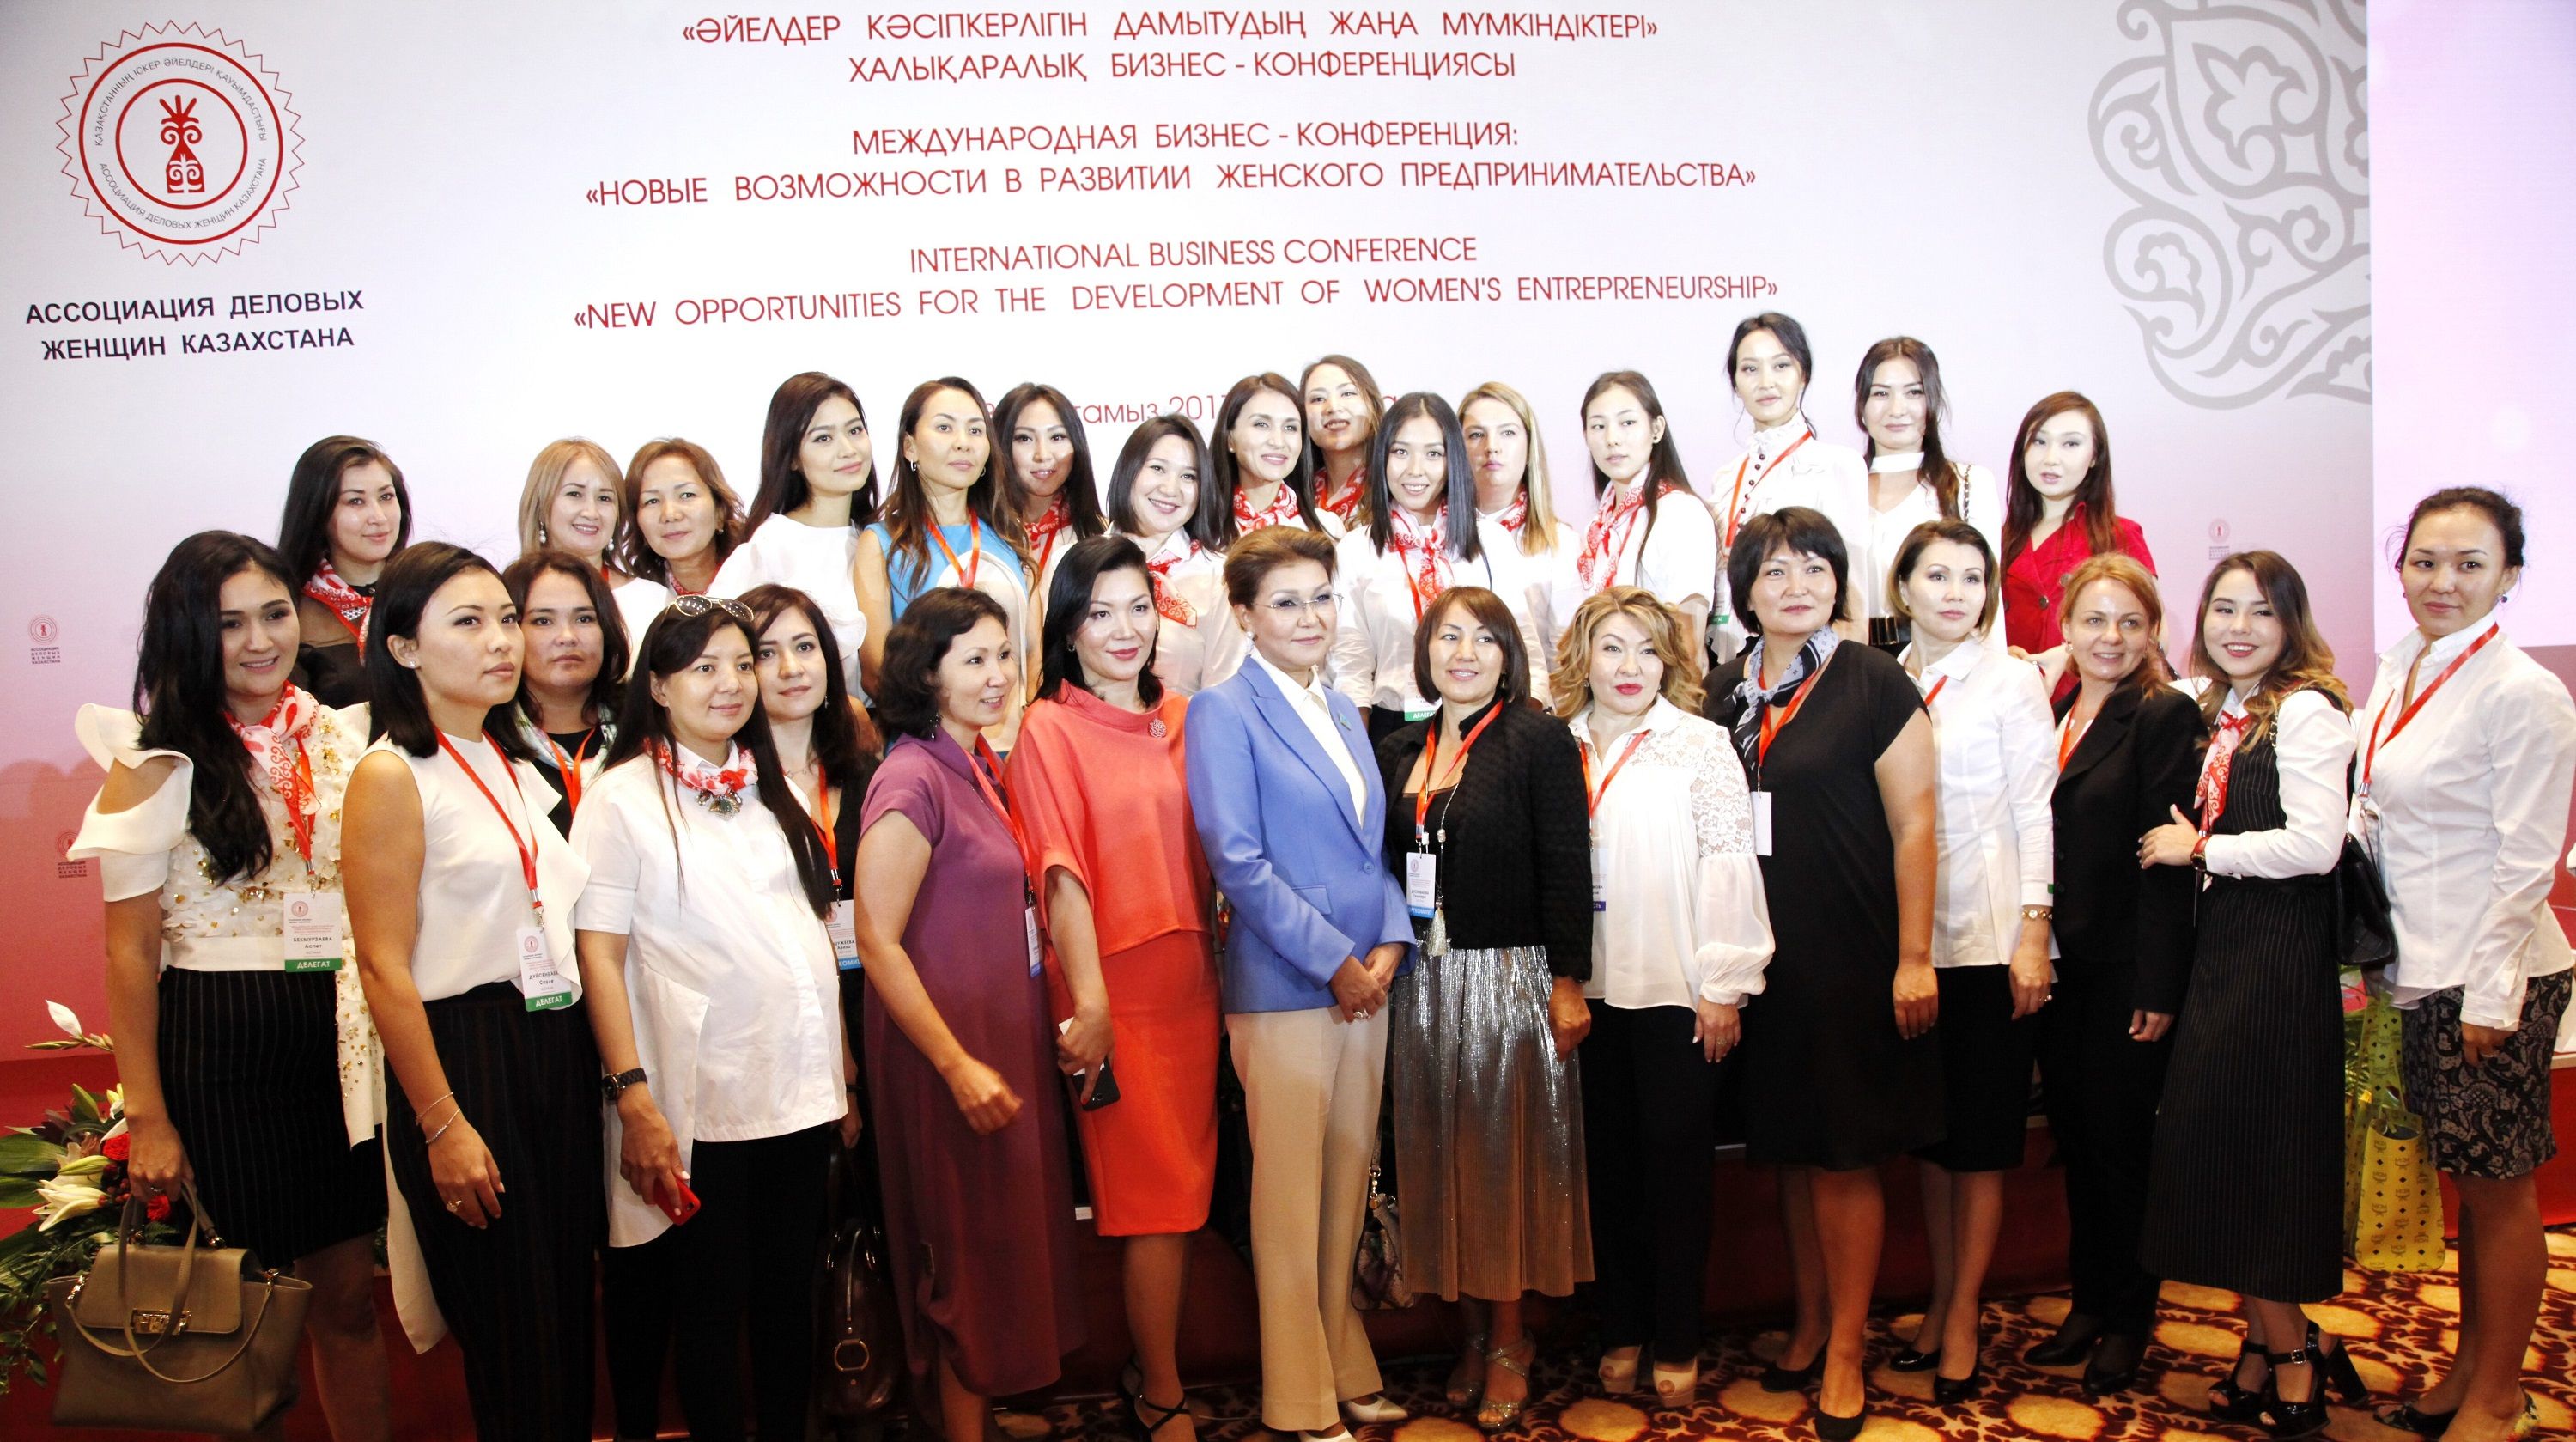 International business women association summit 2017 participants